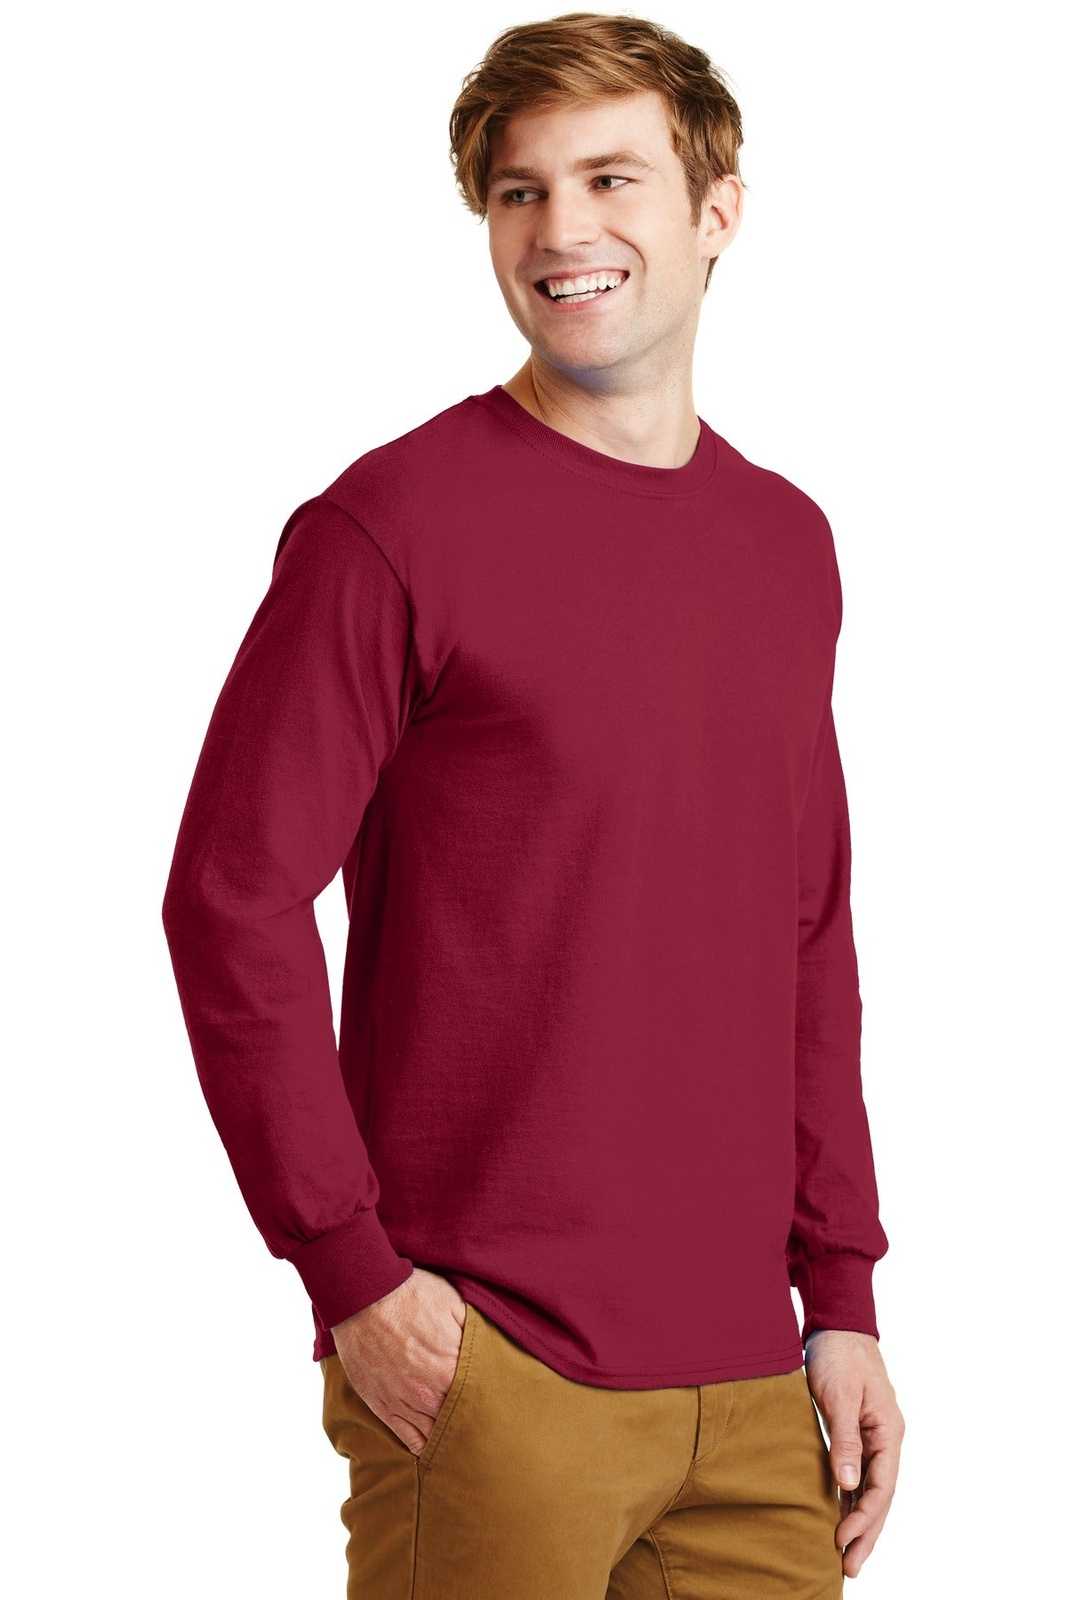 Gildan G2400 Ultra Cotton 100% Cotton Long Sleeve T-Shirt - Cardinal Red - HIT a Double